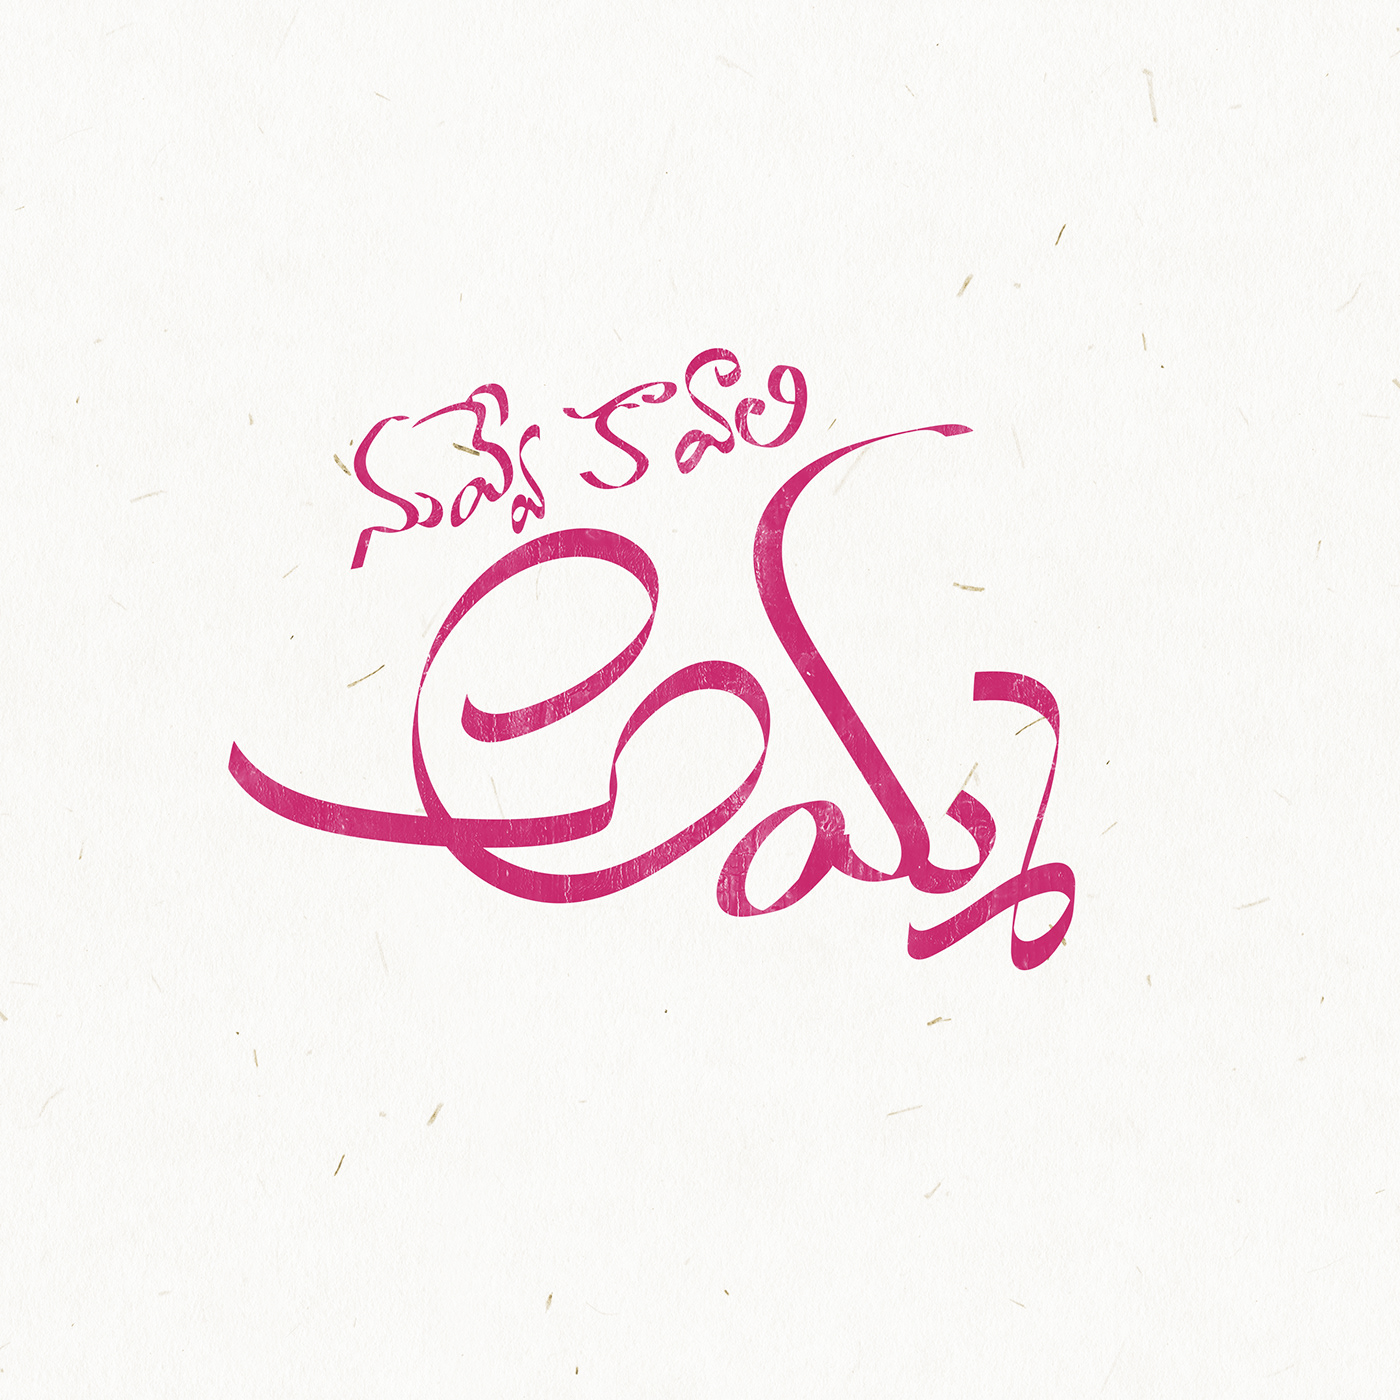 telugu Telugu Typo TELUGU TYPOGRAPHY typography   creative typo typographic type lettering nivriti